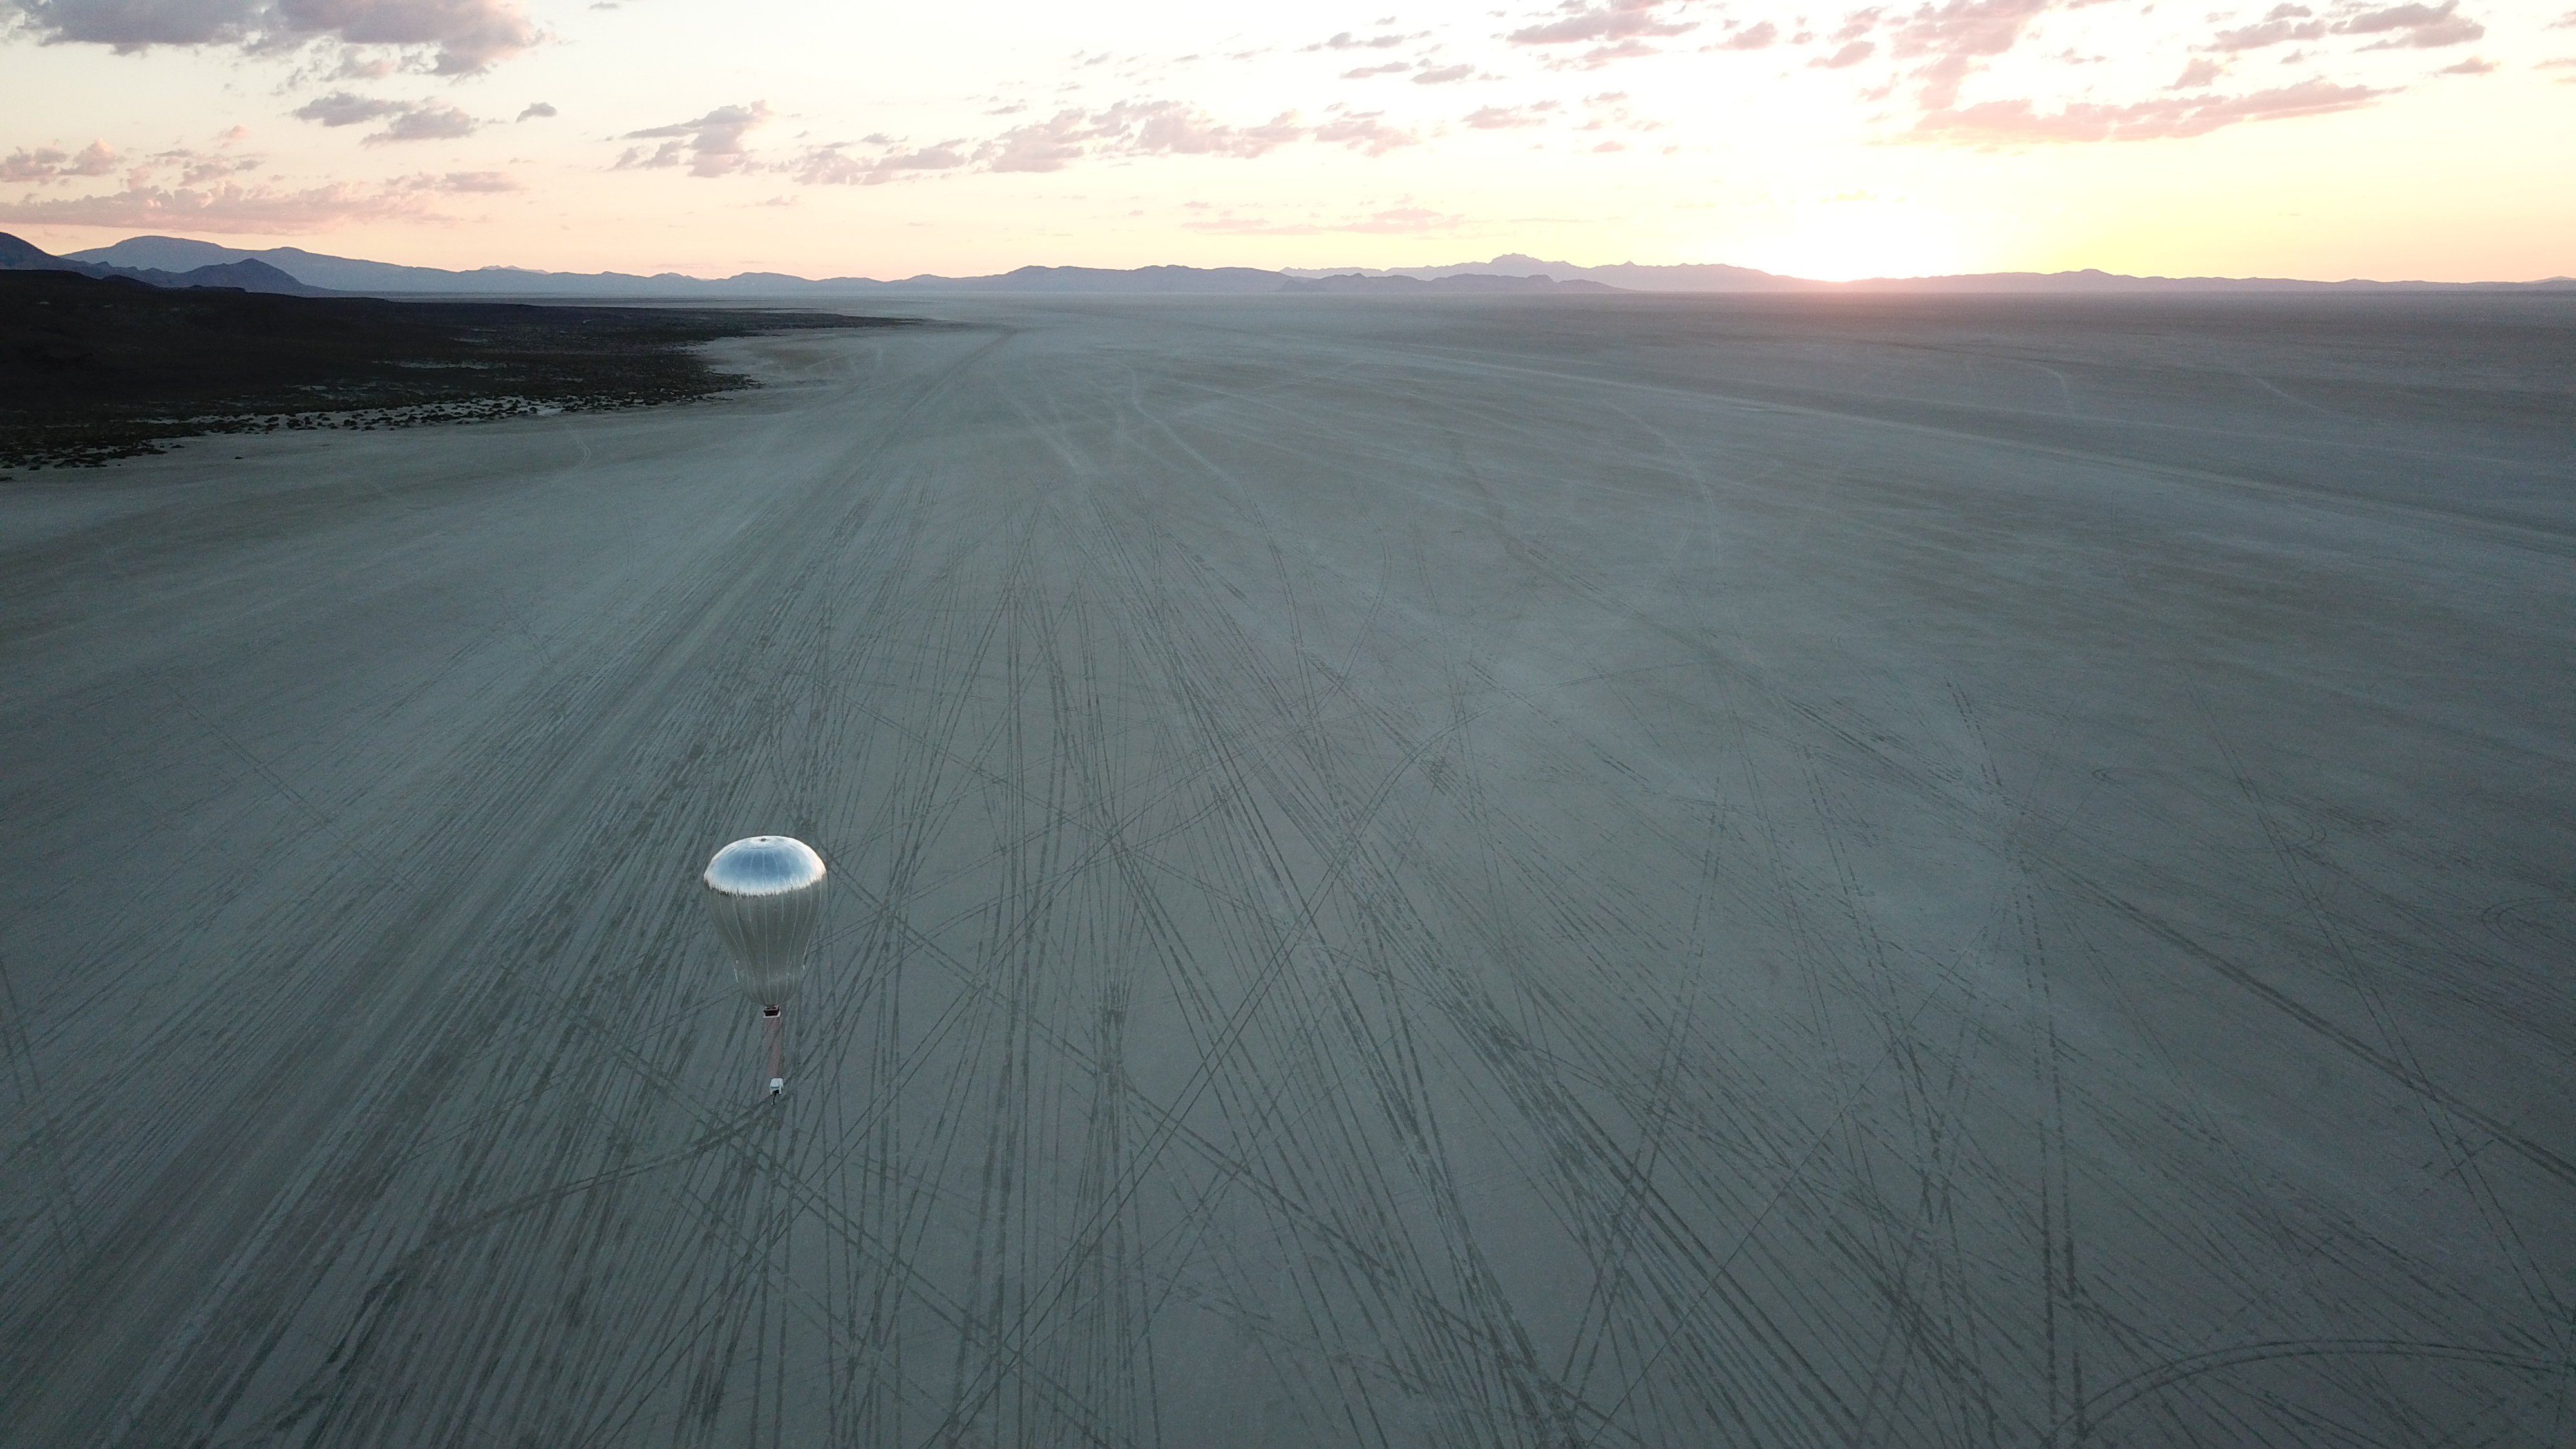 Picture: Prototype Venus aerobot in its second flight, at sunrise.